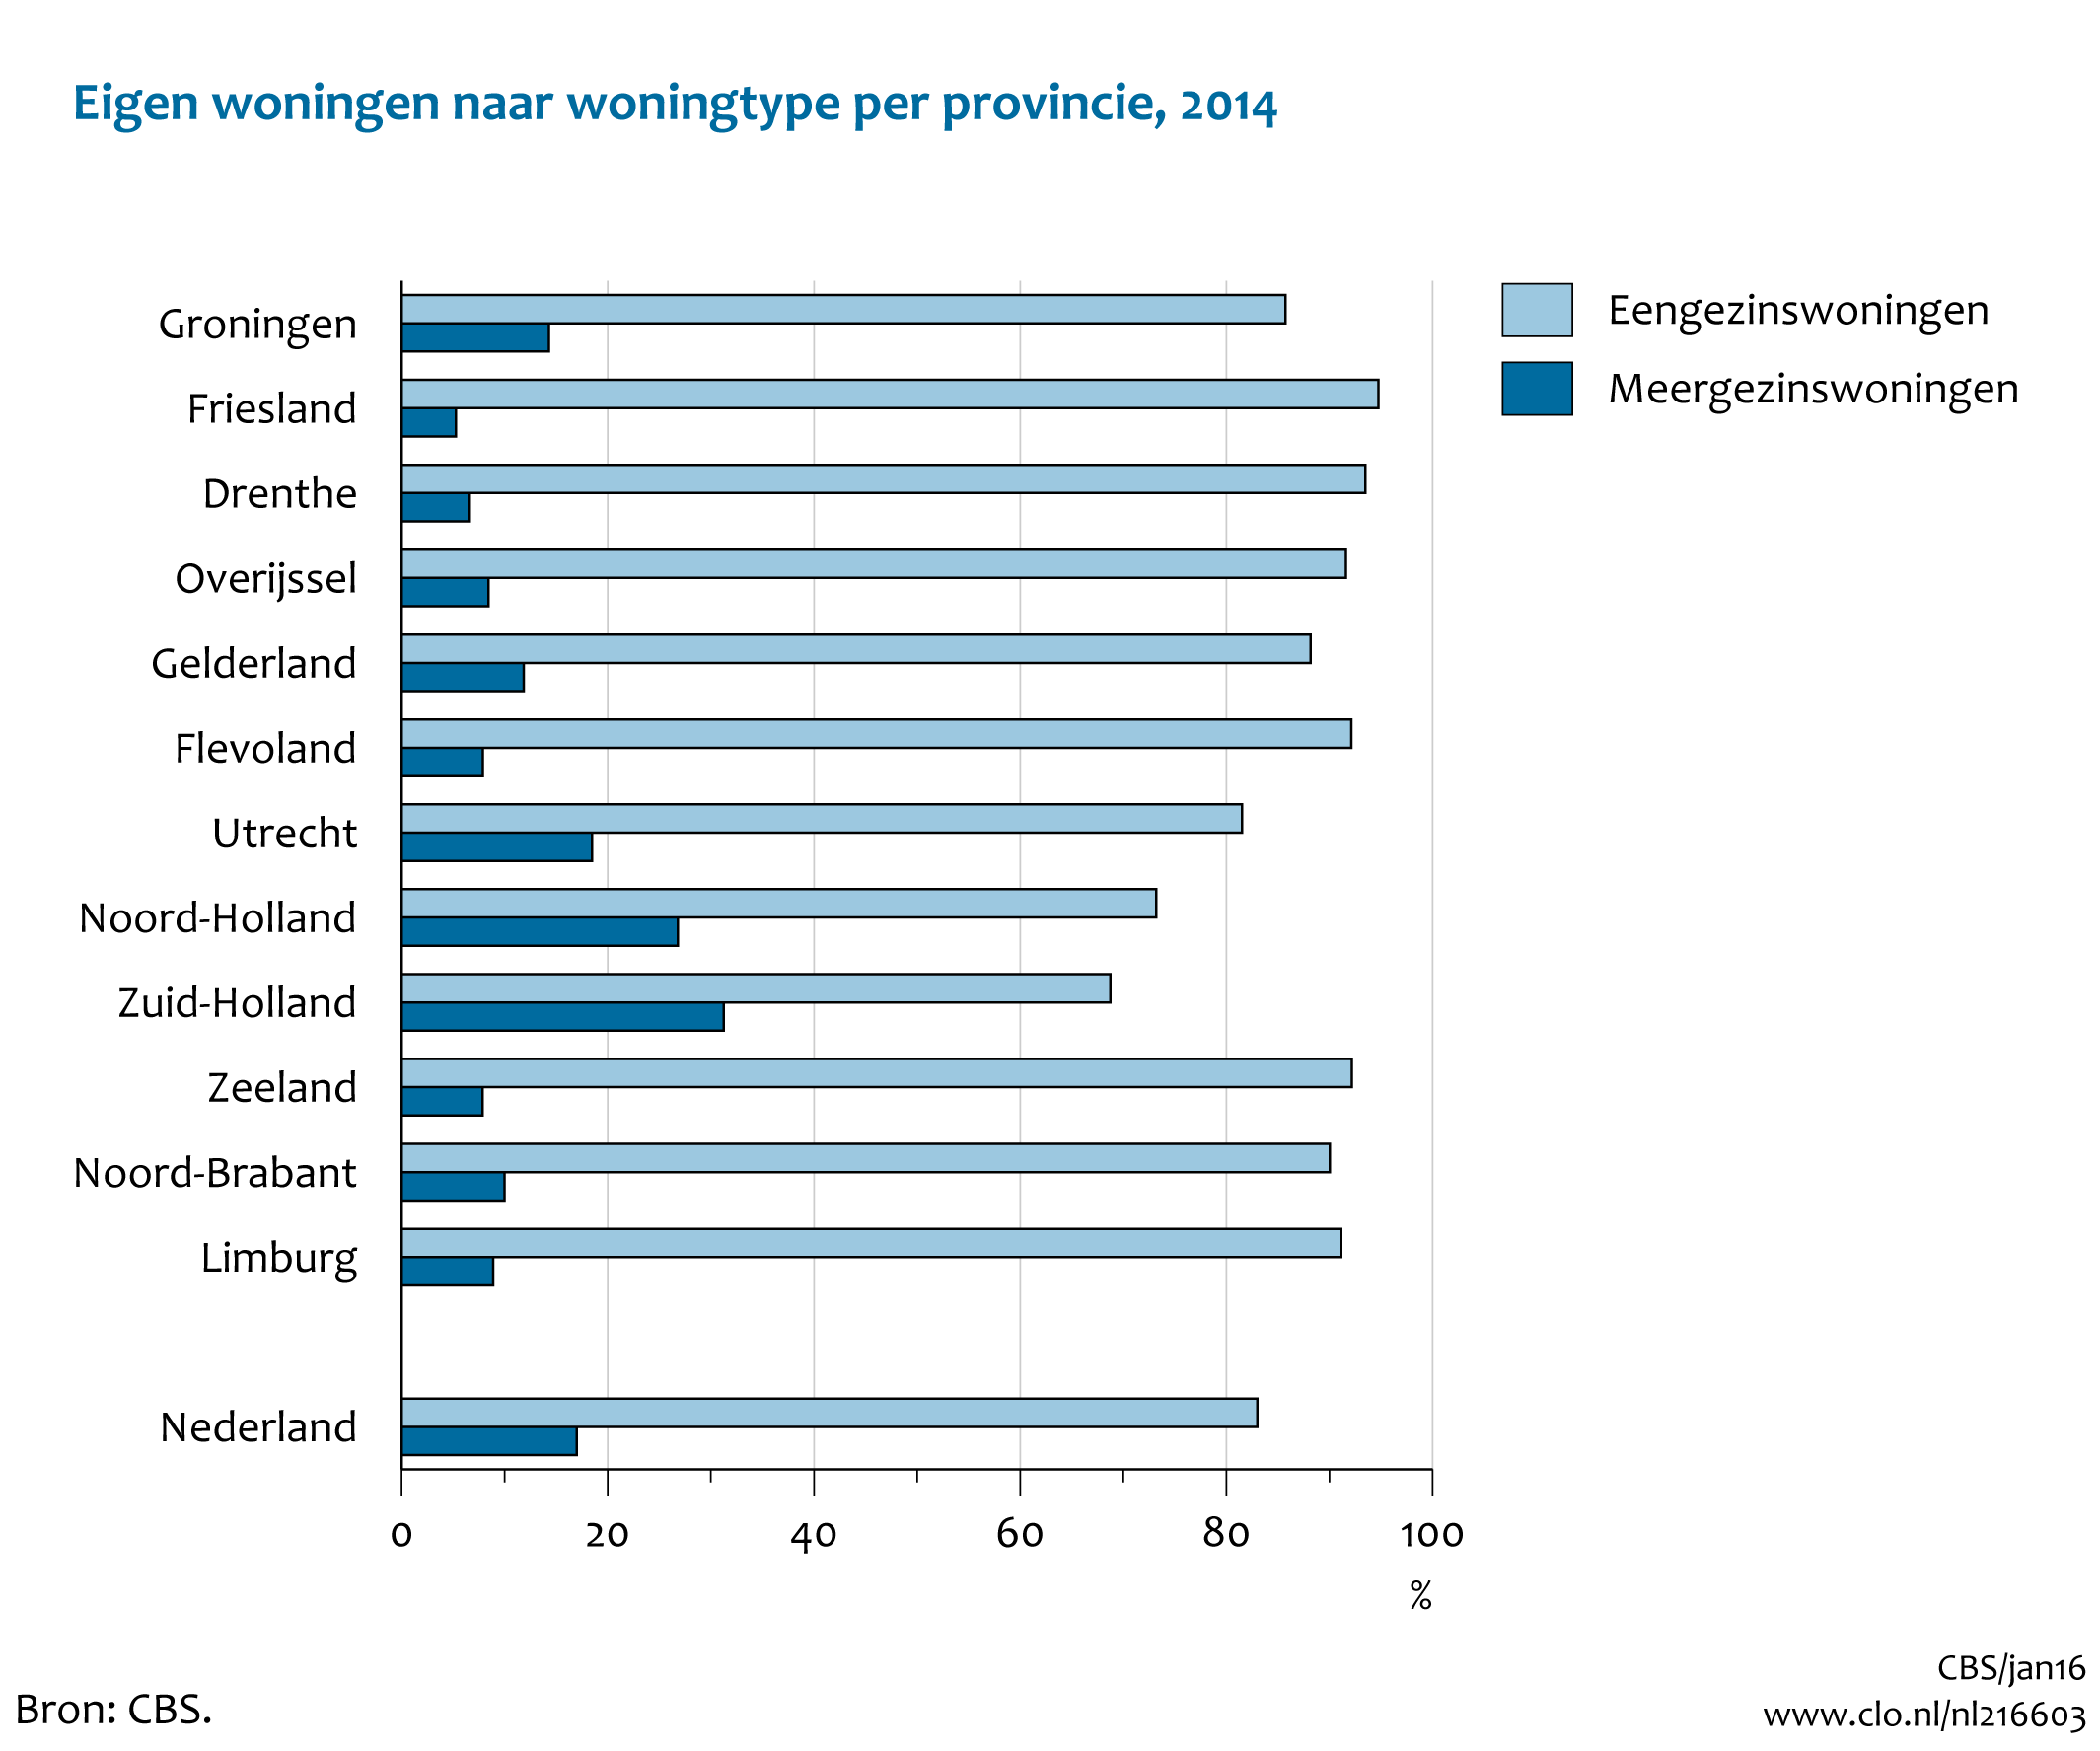 Figuur  Eigen woningen naar woningtype per provincie, 2014. In de rest van de tekst wordt deze figuur uitgebreider uitgelegd.